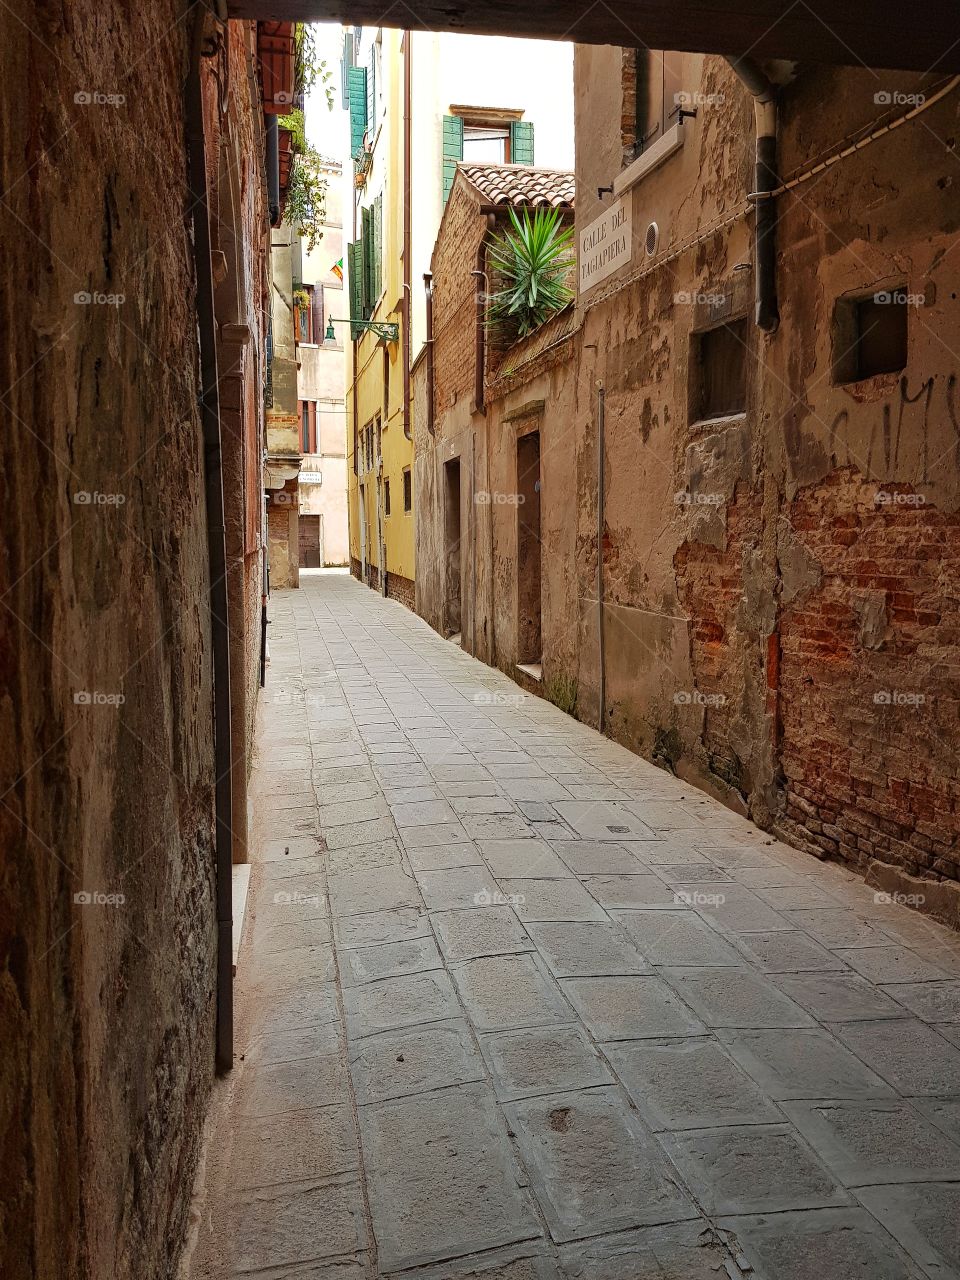 narrow alley